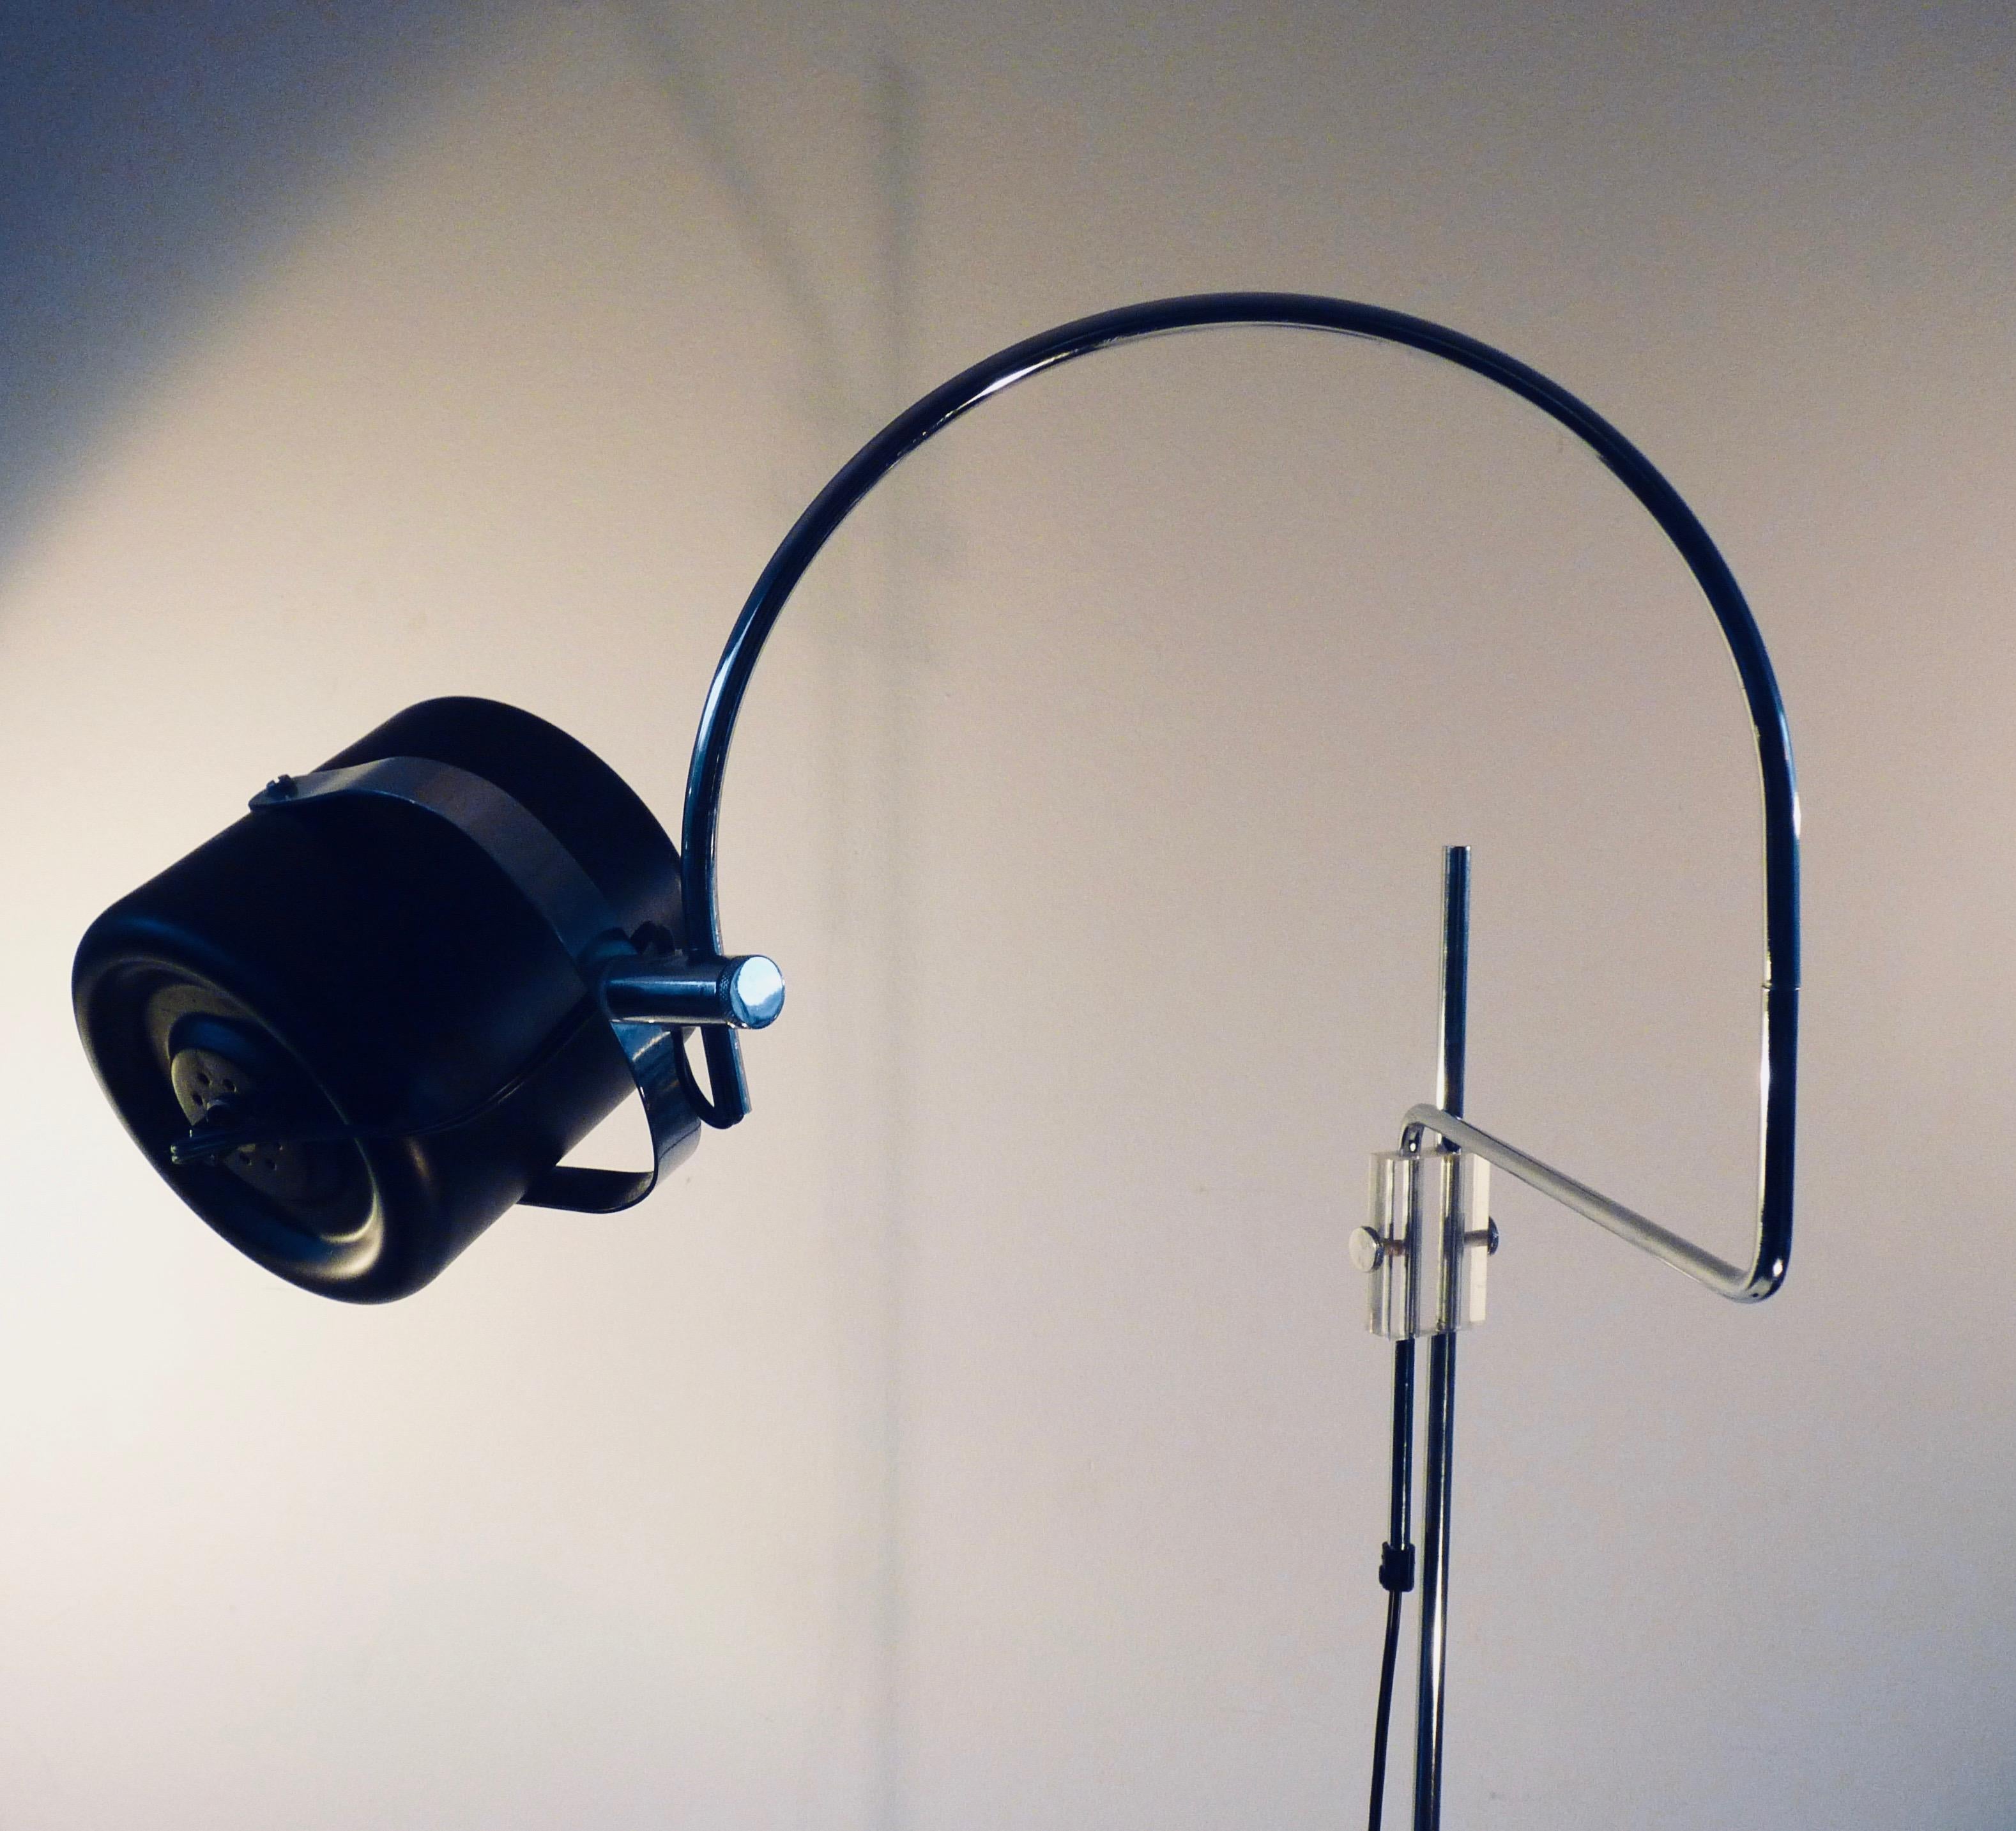 Un lampadaire sculptural à arc en coude par l'un des concepteurs d'éclairage néerlandais les plus respectés de l'époque, J.J.M. Hoogervorst, concepteur en chef d'ANVIA, Hollande. 
De nombreuses lampes conçues par J.J.M. Hoogervorst sont des modèles